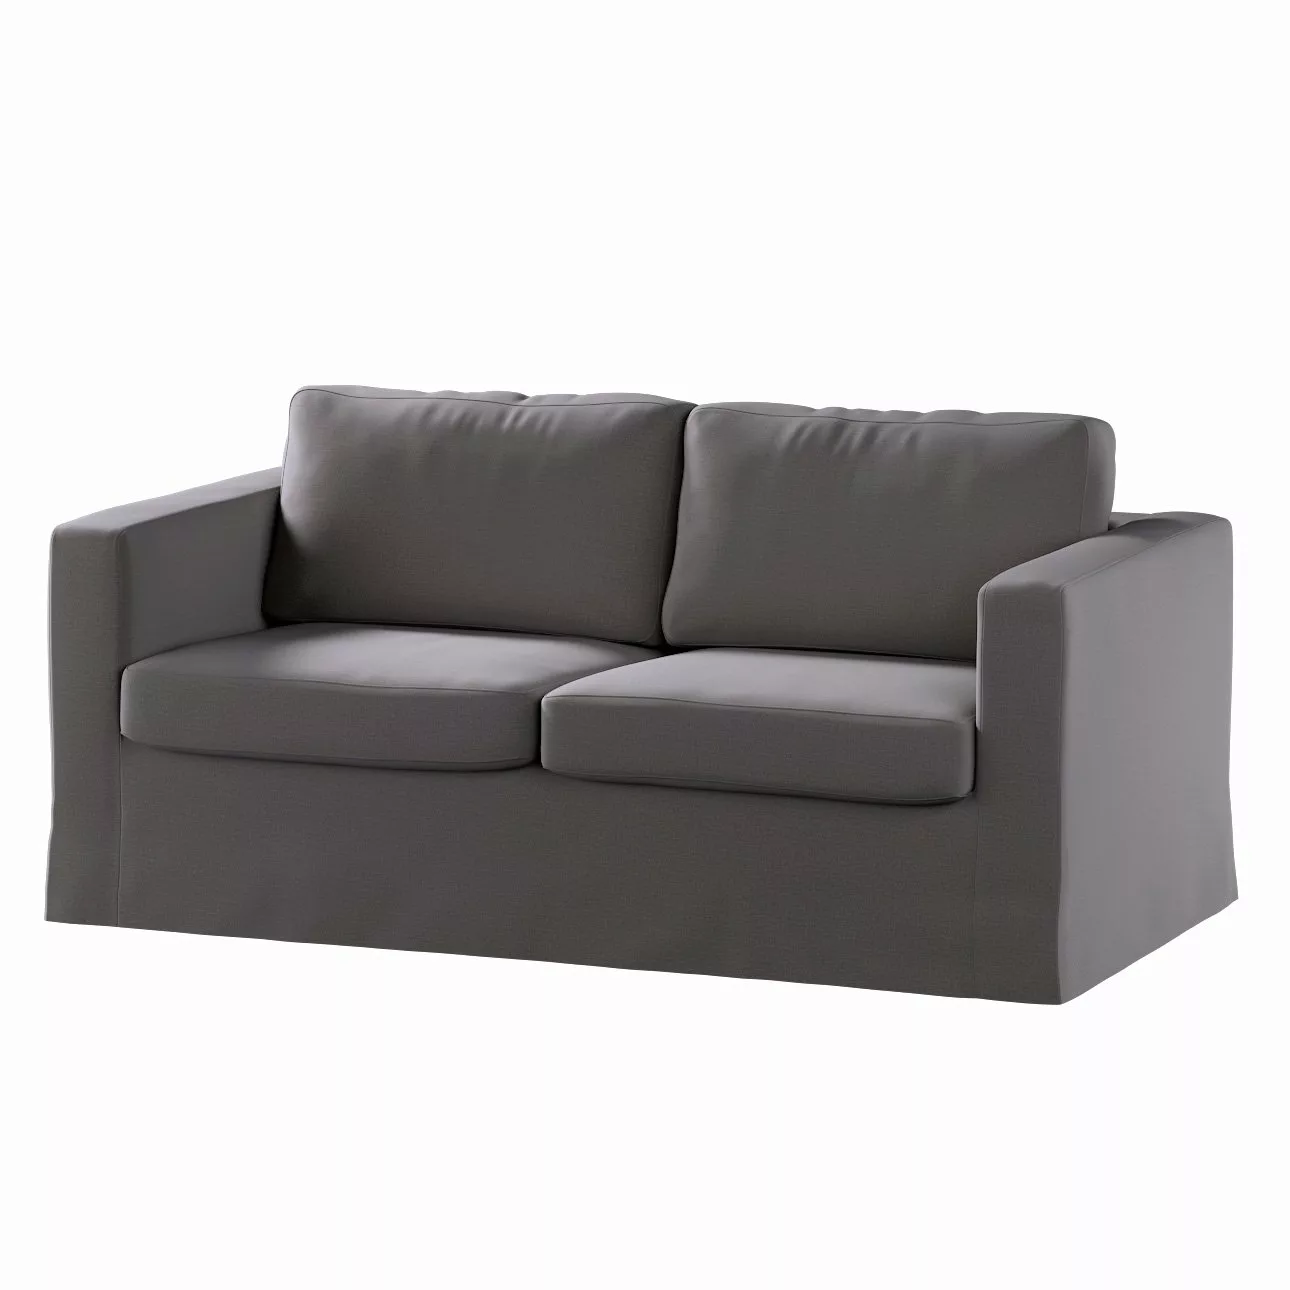 Bezug für Karlstad 2-Sitzer Sofa nicht ausklappbar, lang, braun, Sofahusse, günstig online kaufen